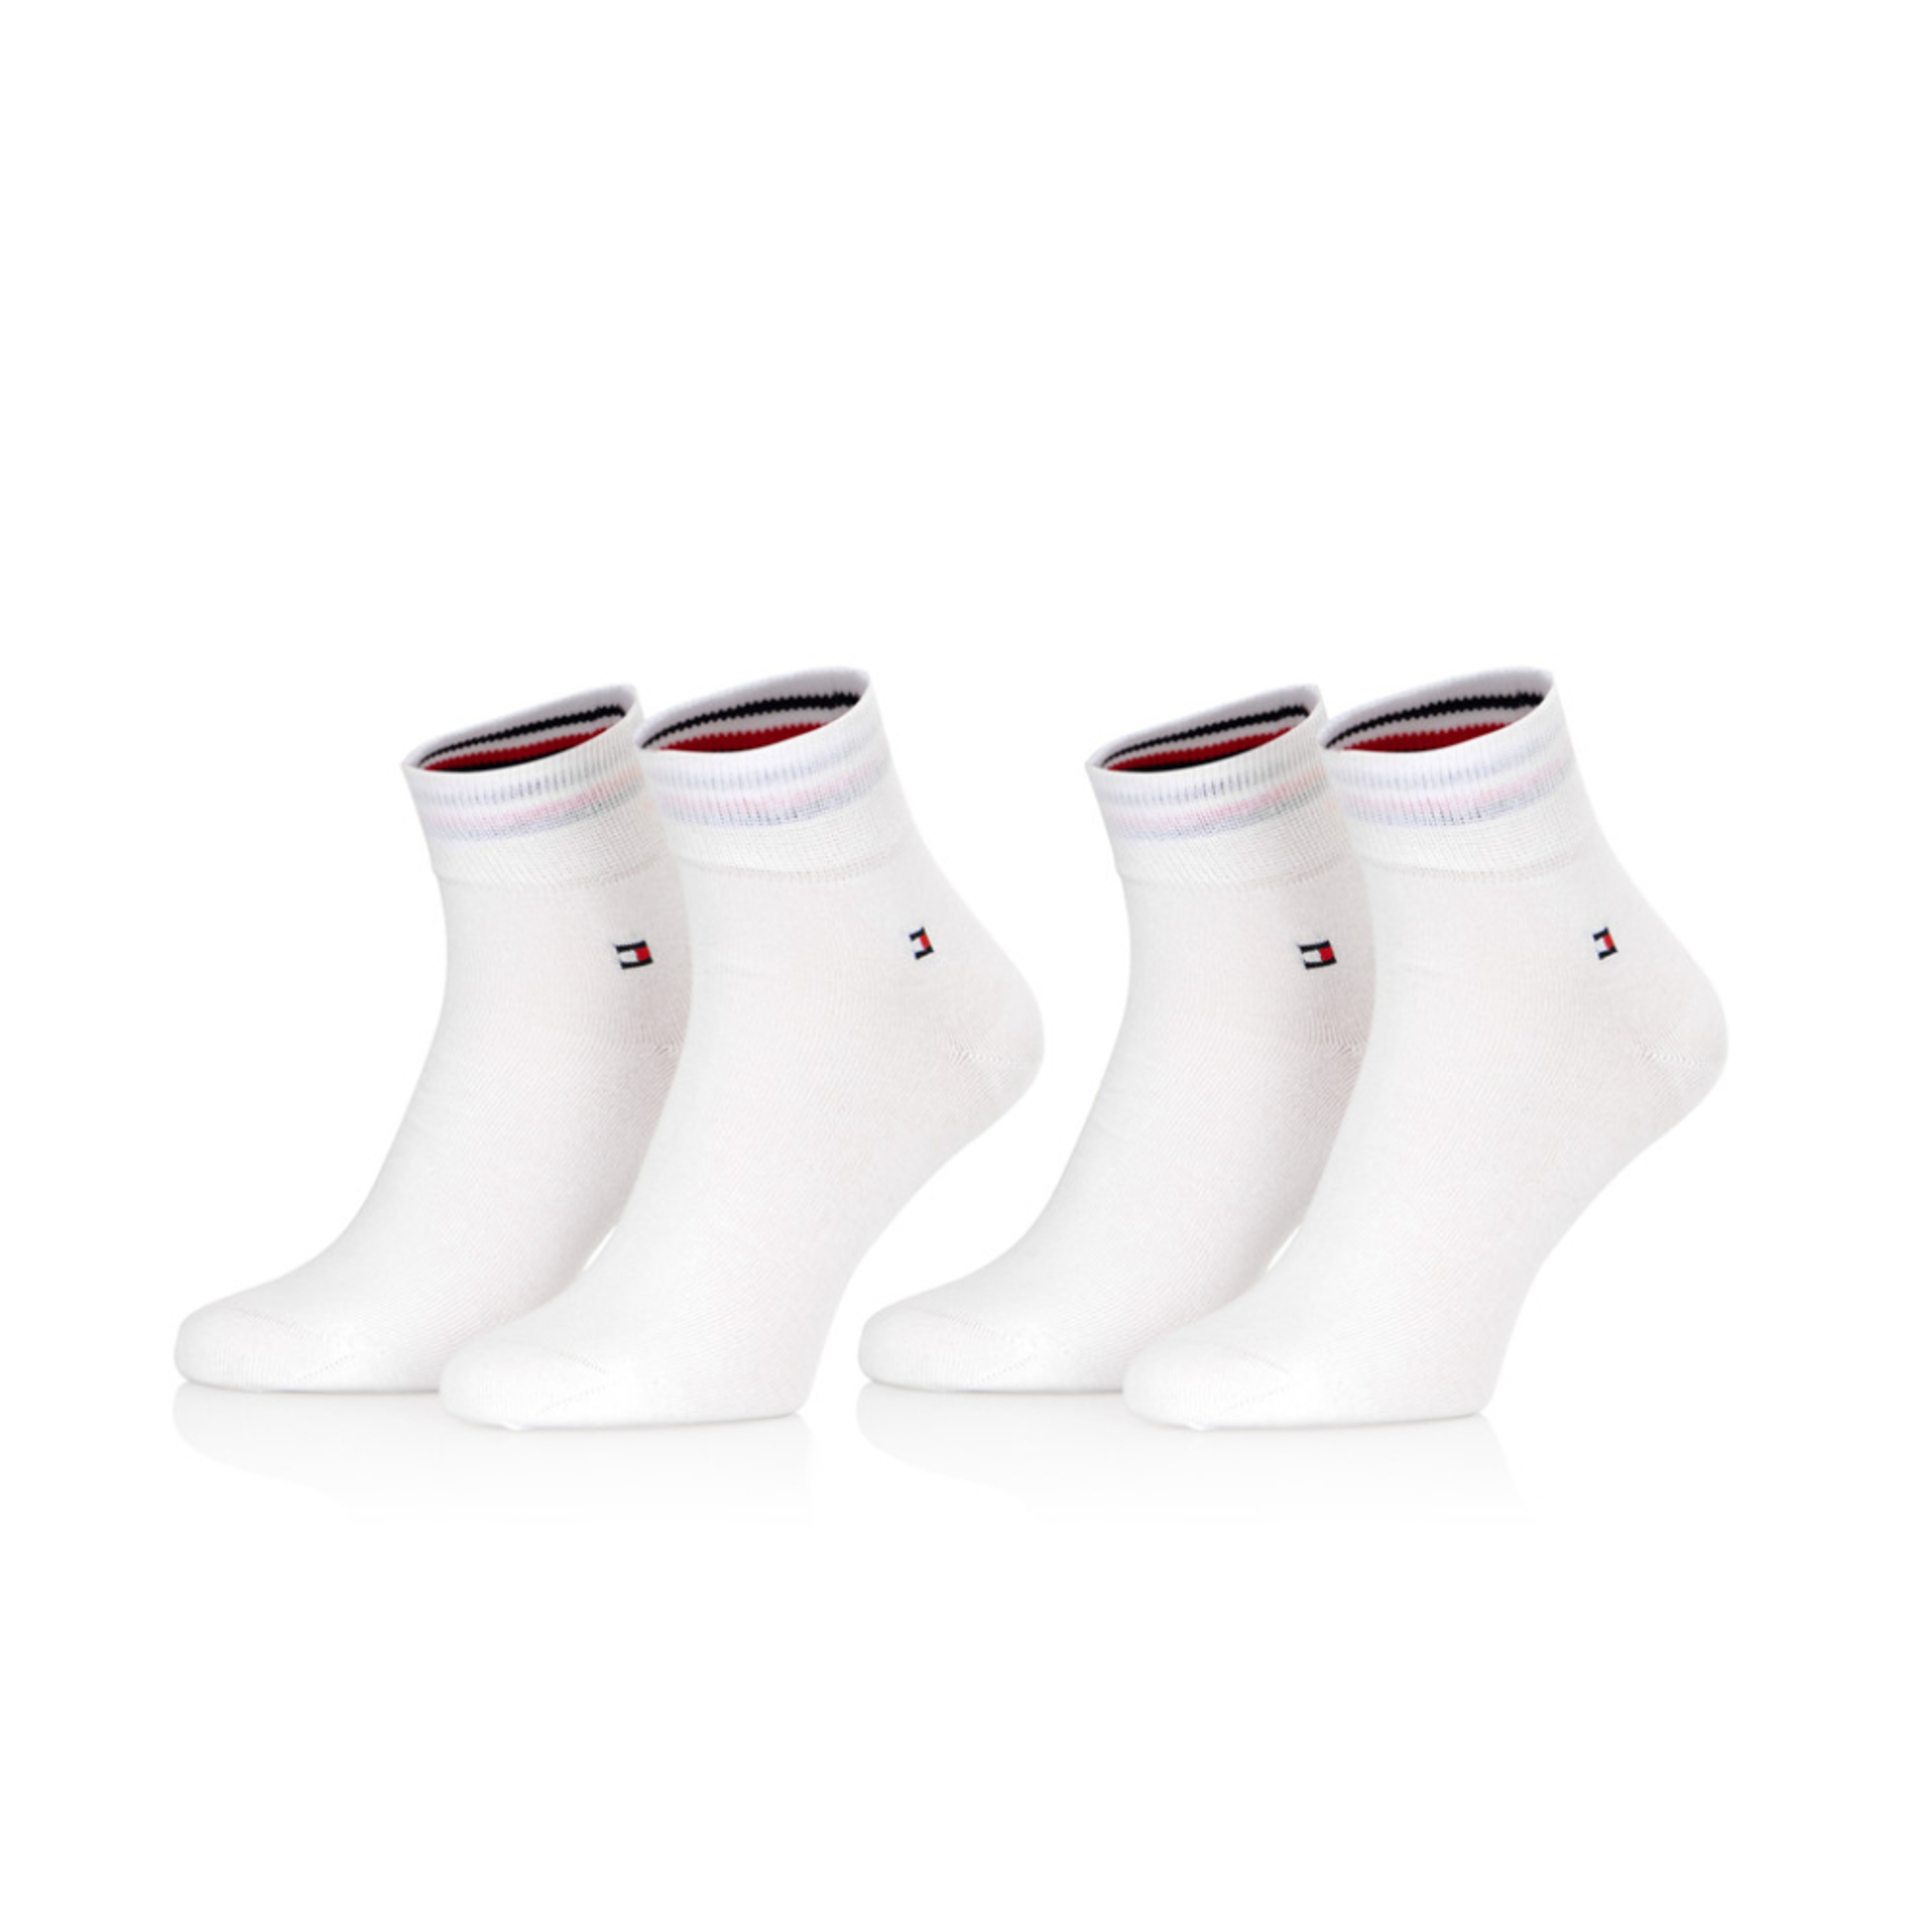 Tommy Hilfiger pánske biele ponožky 2 pack - 39/42 (300)